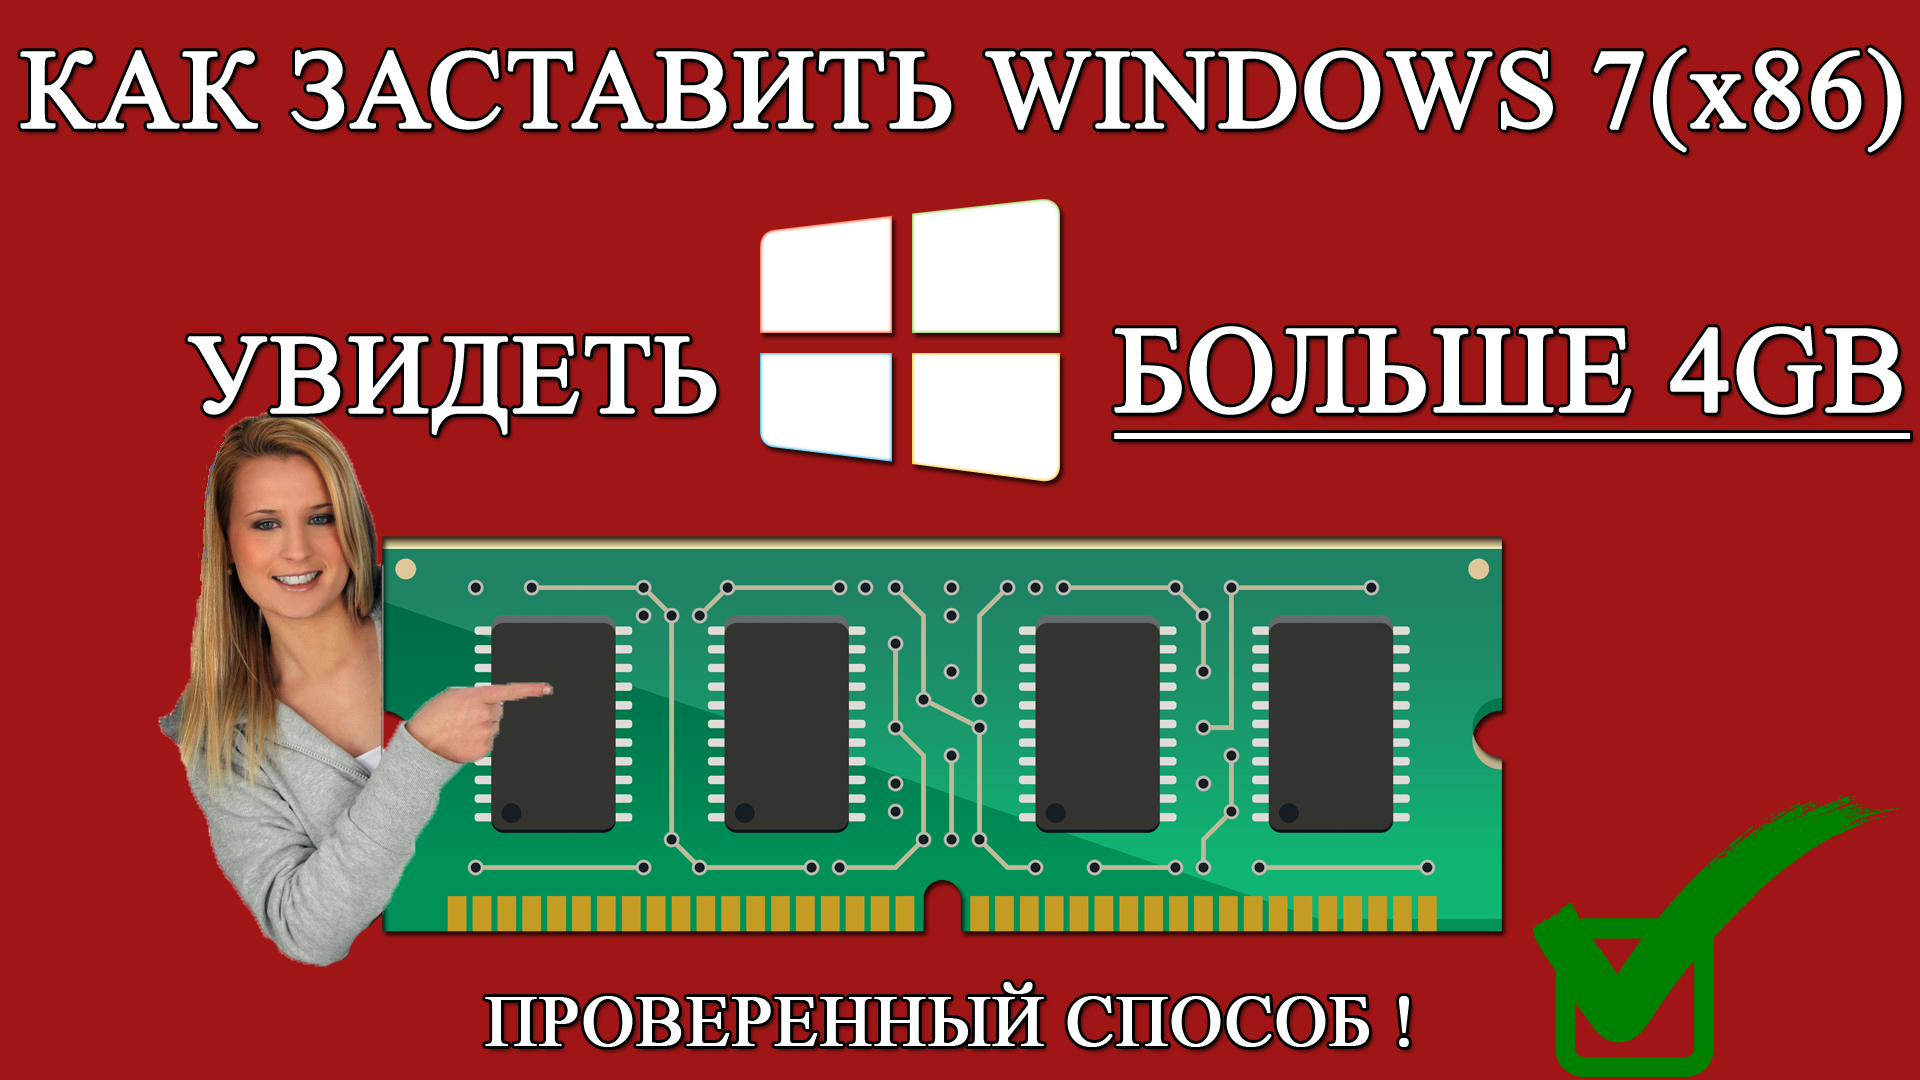 ✅ Windows 7 (x86) и оперативная память больше 4 ГБ